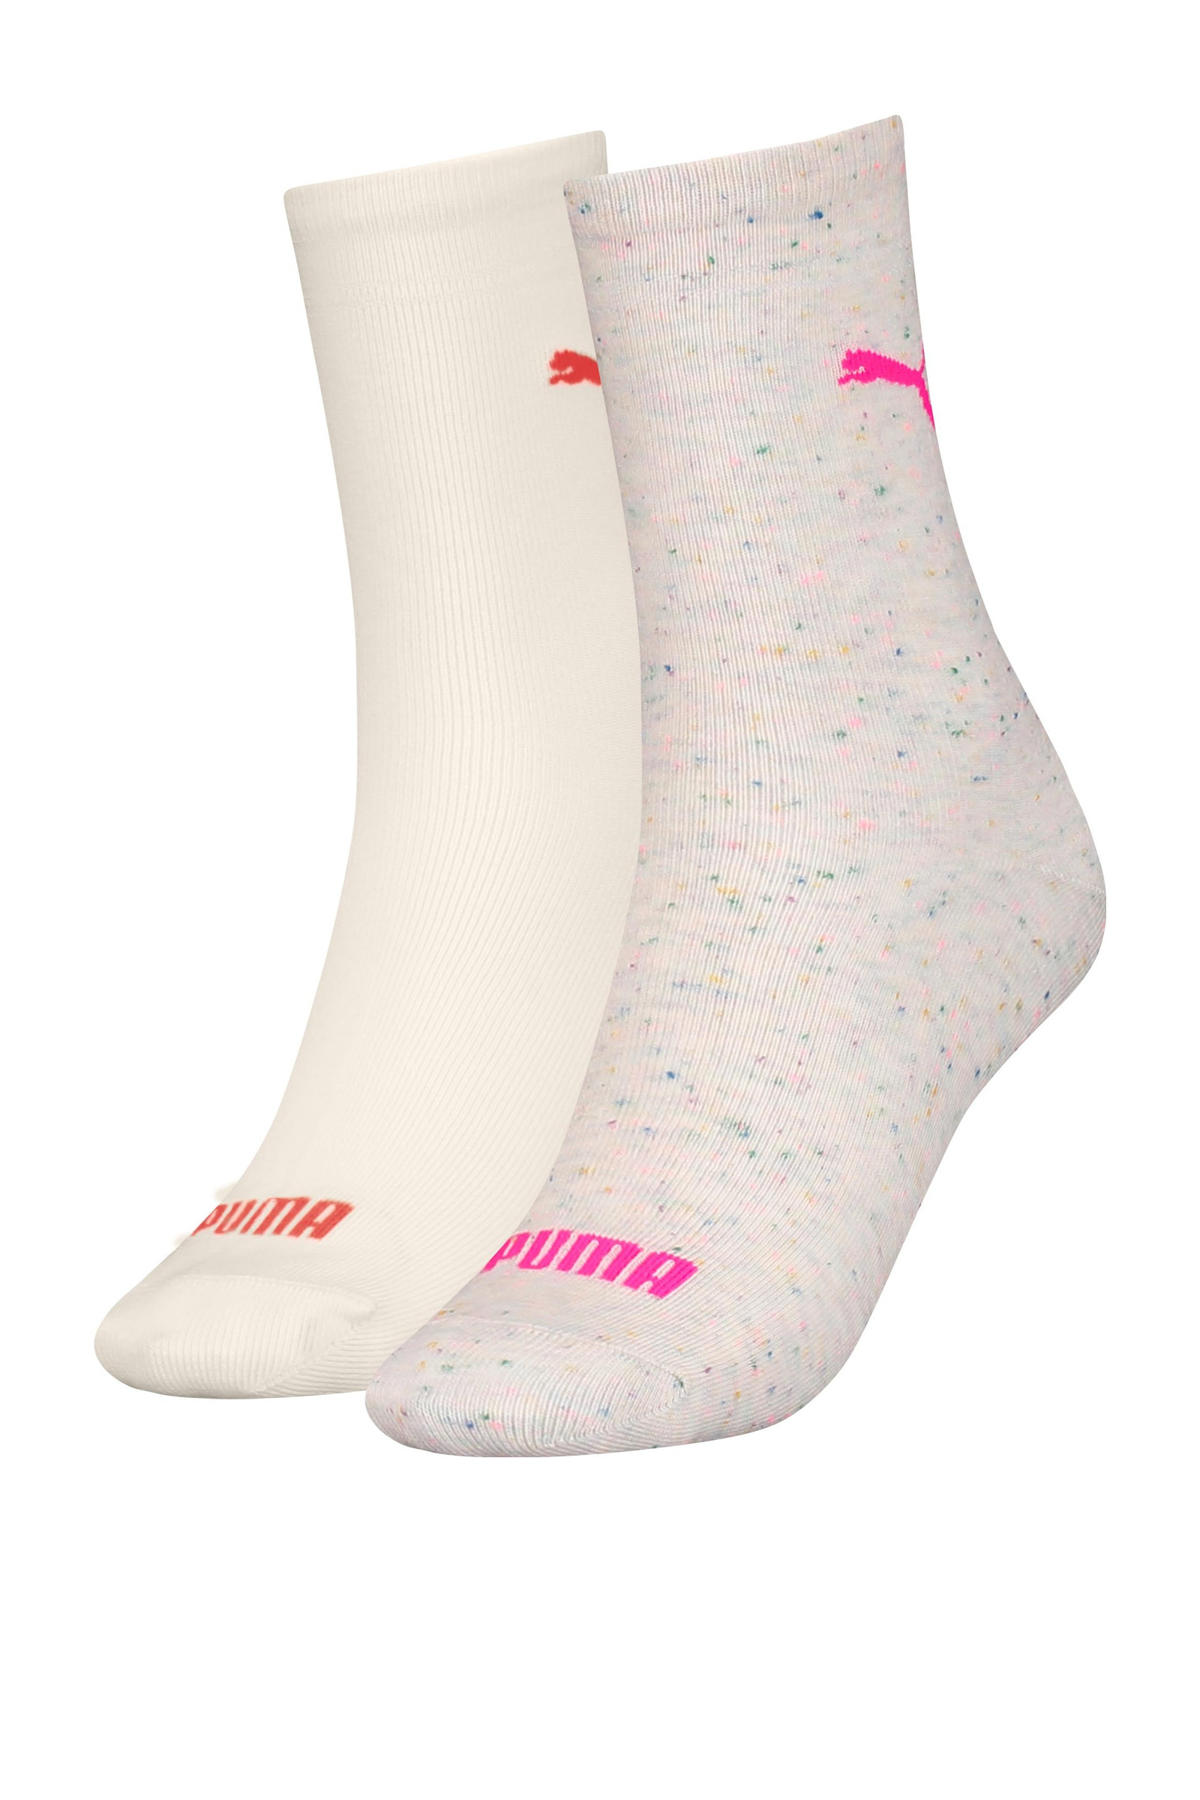 Puma sokken met logo set van 2 lichtroze/ecru | wehkamp